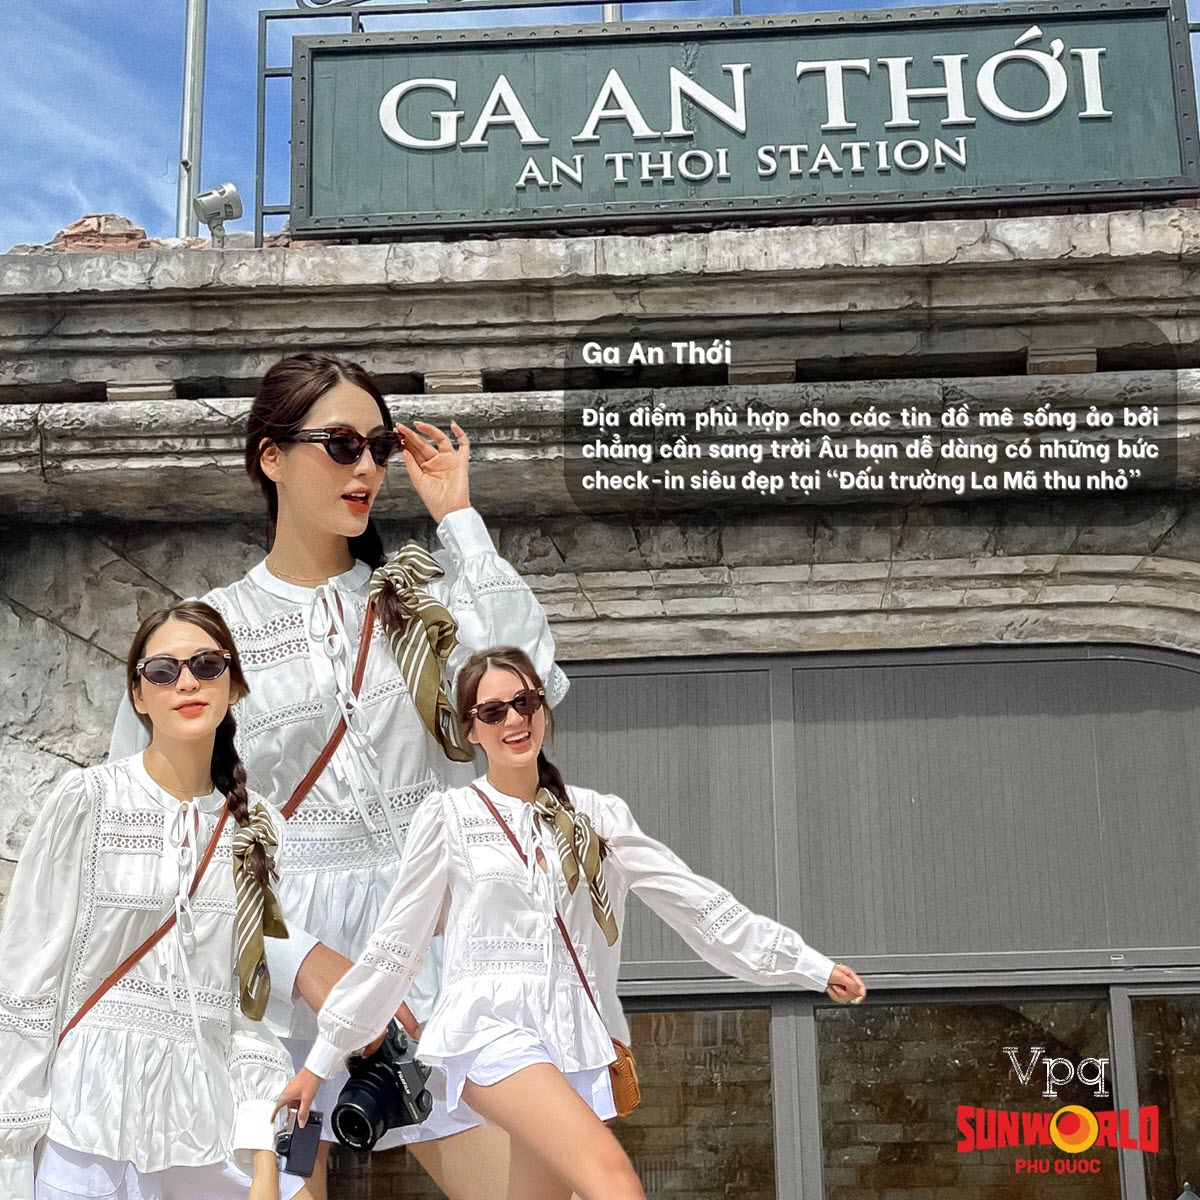 Cùng Á Khôi Lê Thị Thanh Trang trải nghiệm cáp treo Hòn Thơm và khám phá Sun World Hon Thom